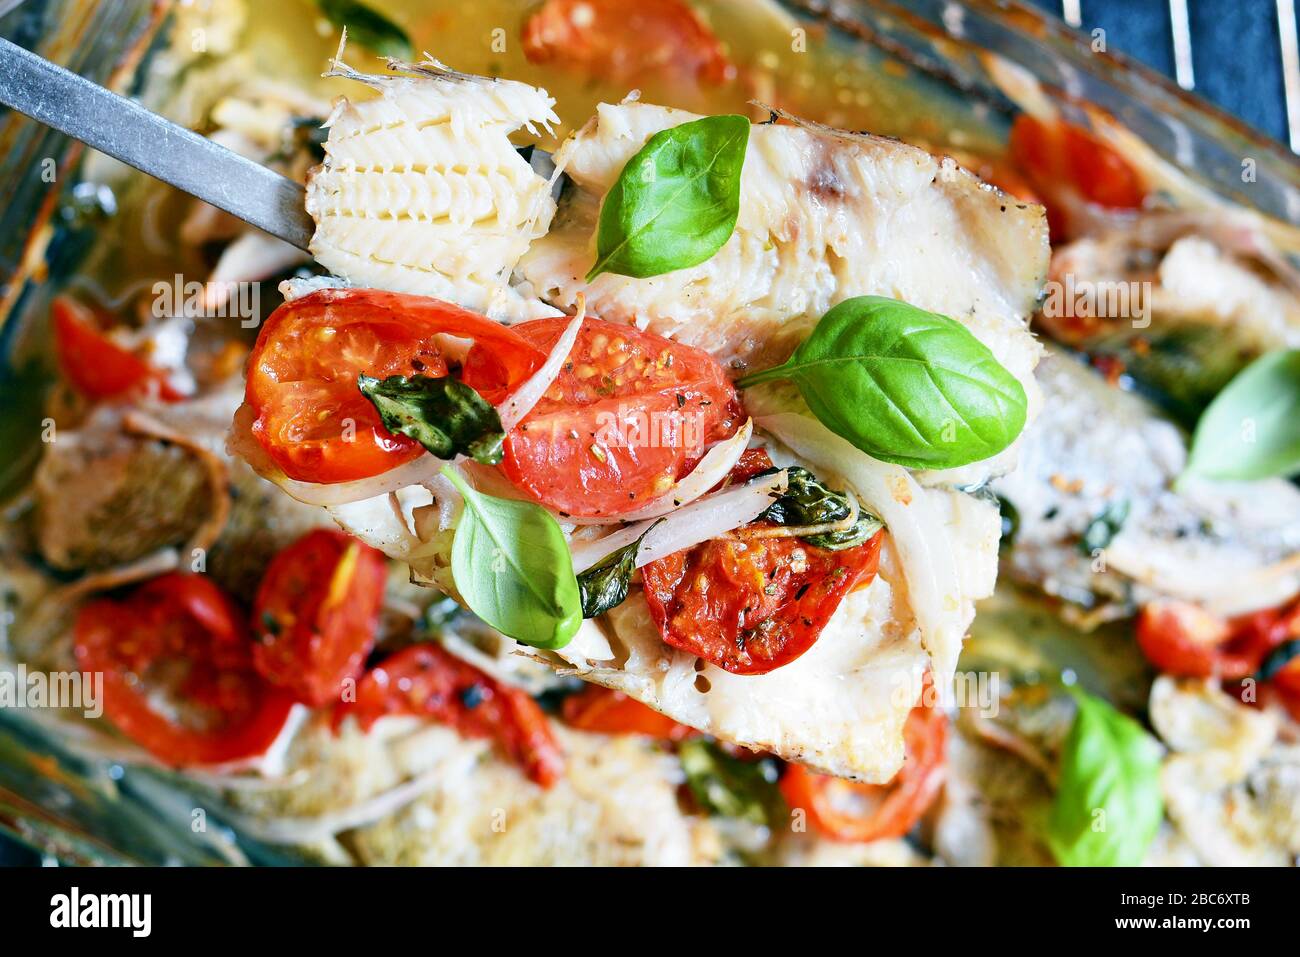 Poisson blanc (pollock, morue, merlu) cuit avec tomates, herbes italiennes et feuilles de basilic frais dans leur propre jus. Délicieux fruits de mer méditerranéens Banque D'Images